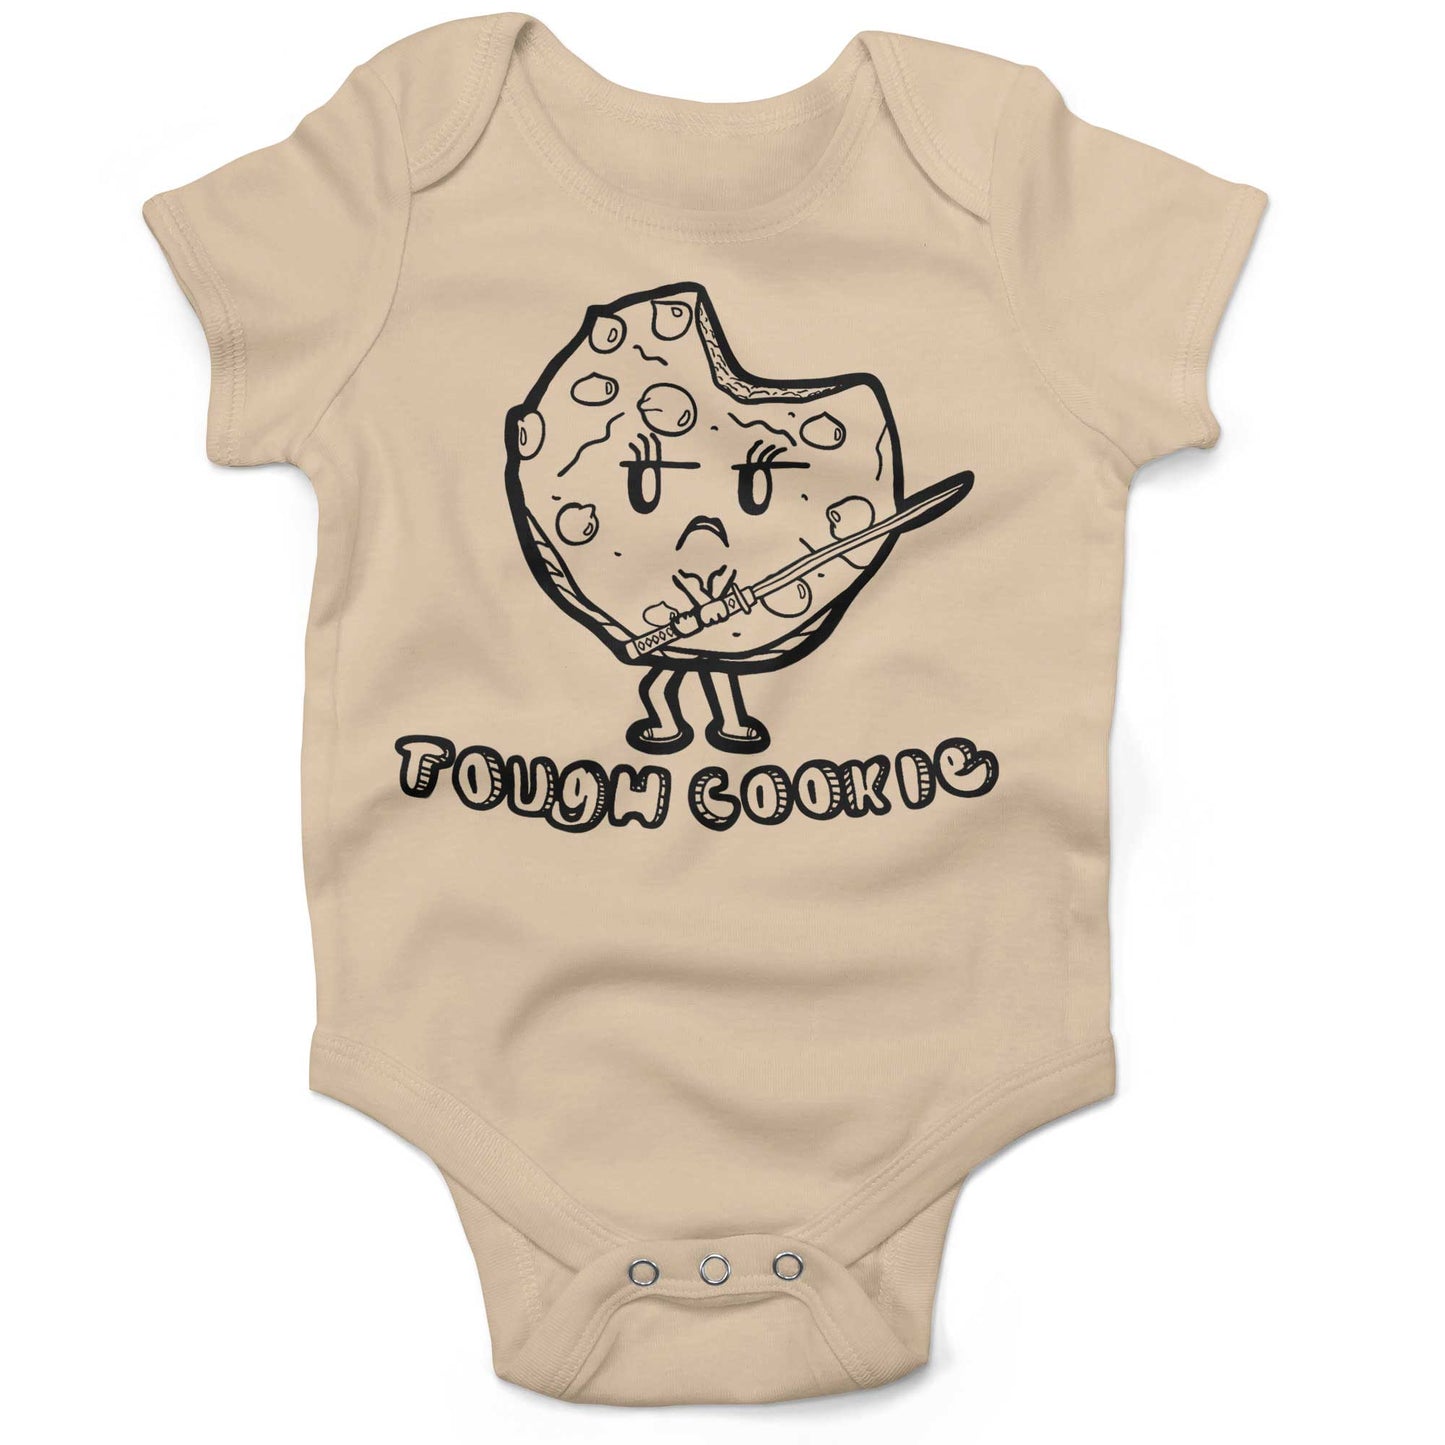 Tough Cookie Infant Bodysuit or Raglan Tee-Organic Natural-3-6 months